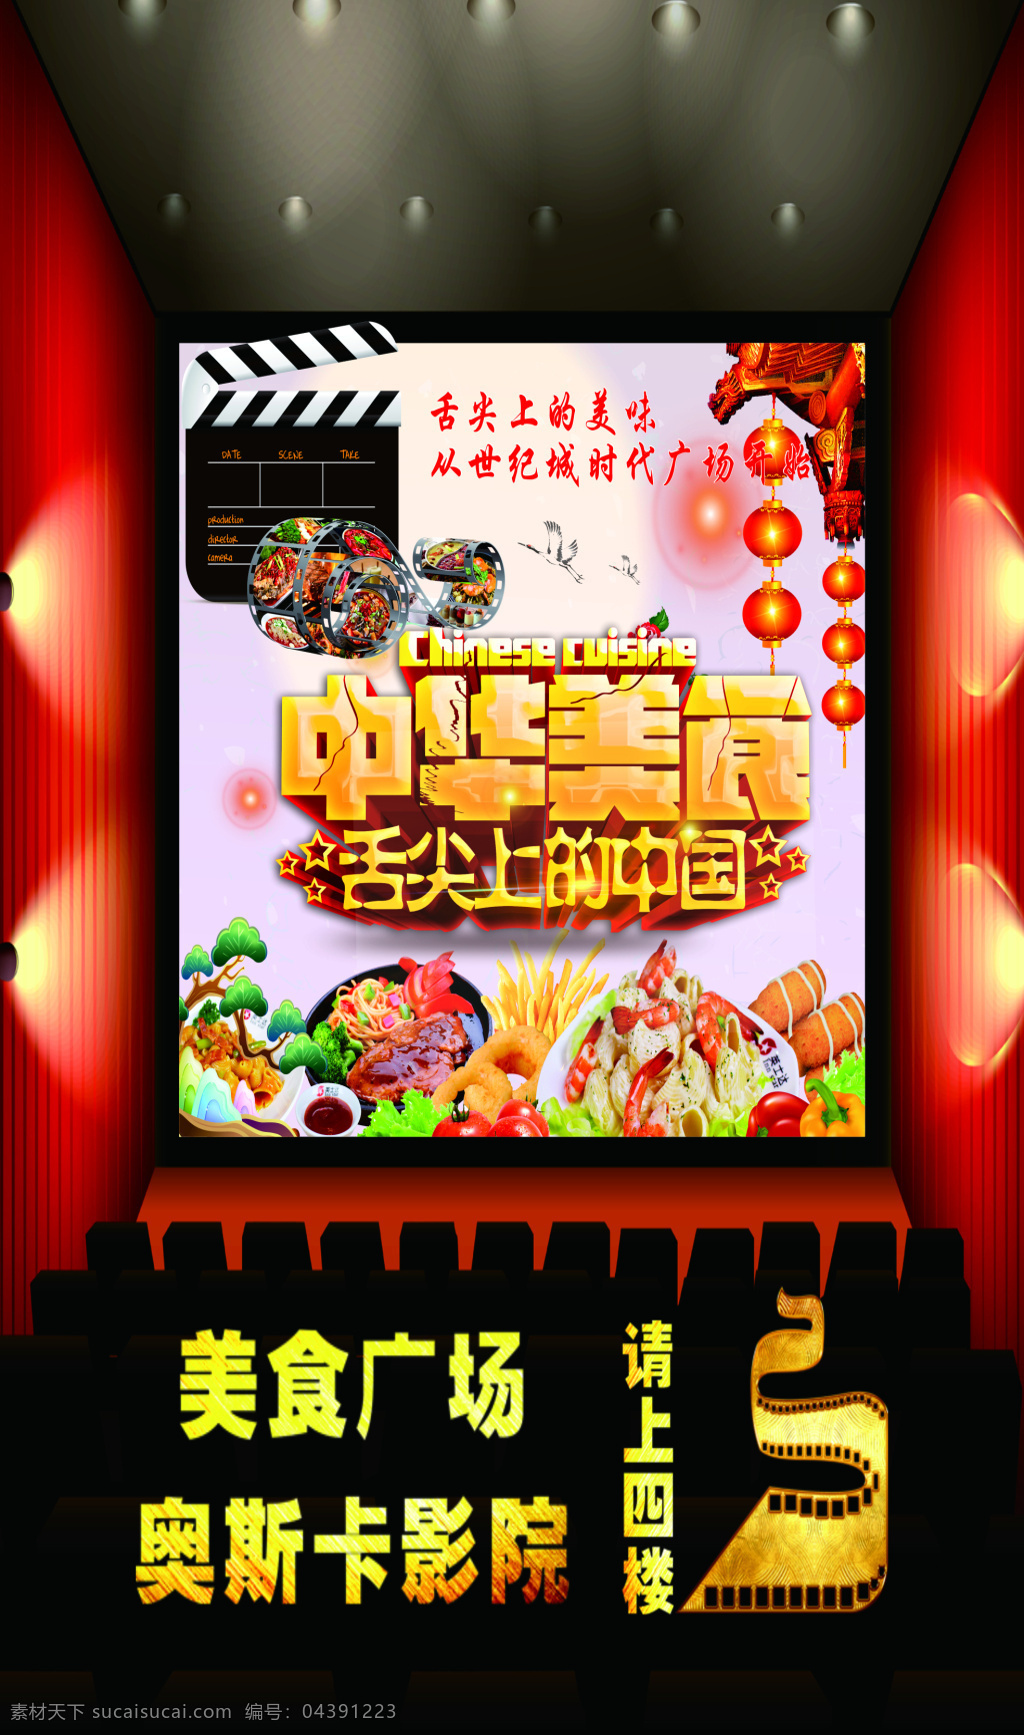 中华美食海报 指示图 美食 奥斯卡影院 电影 中华美食